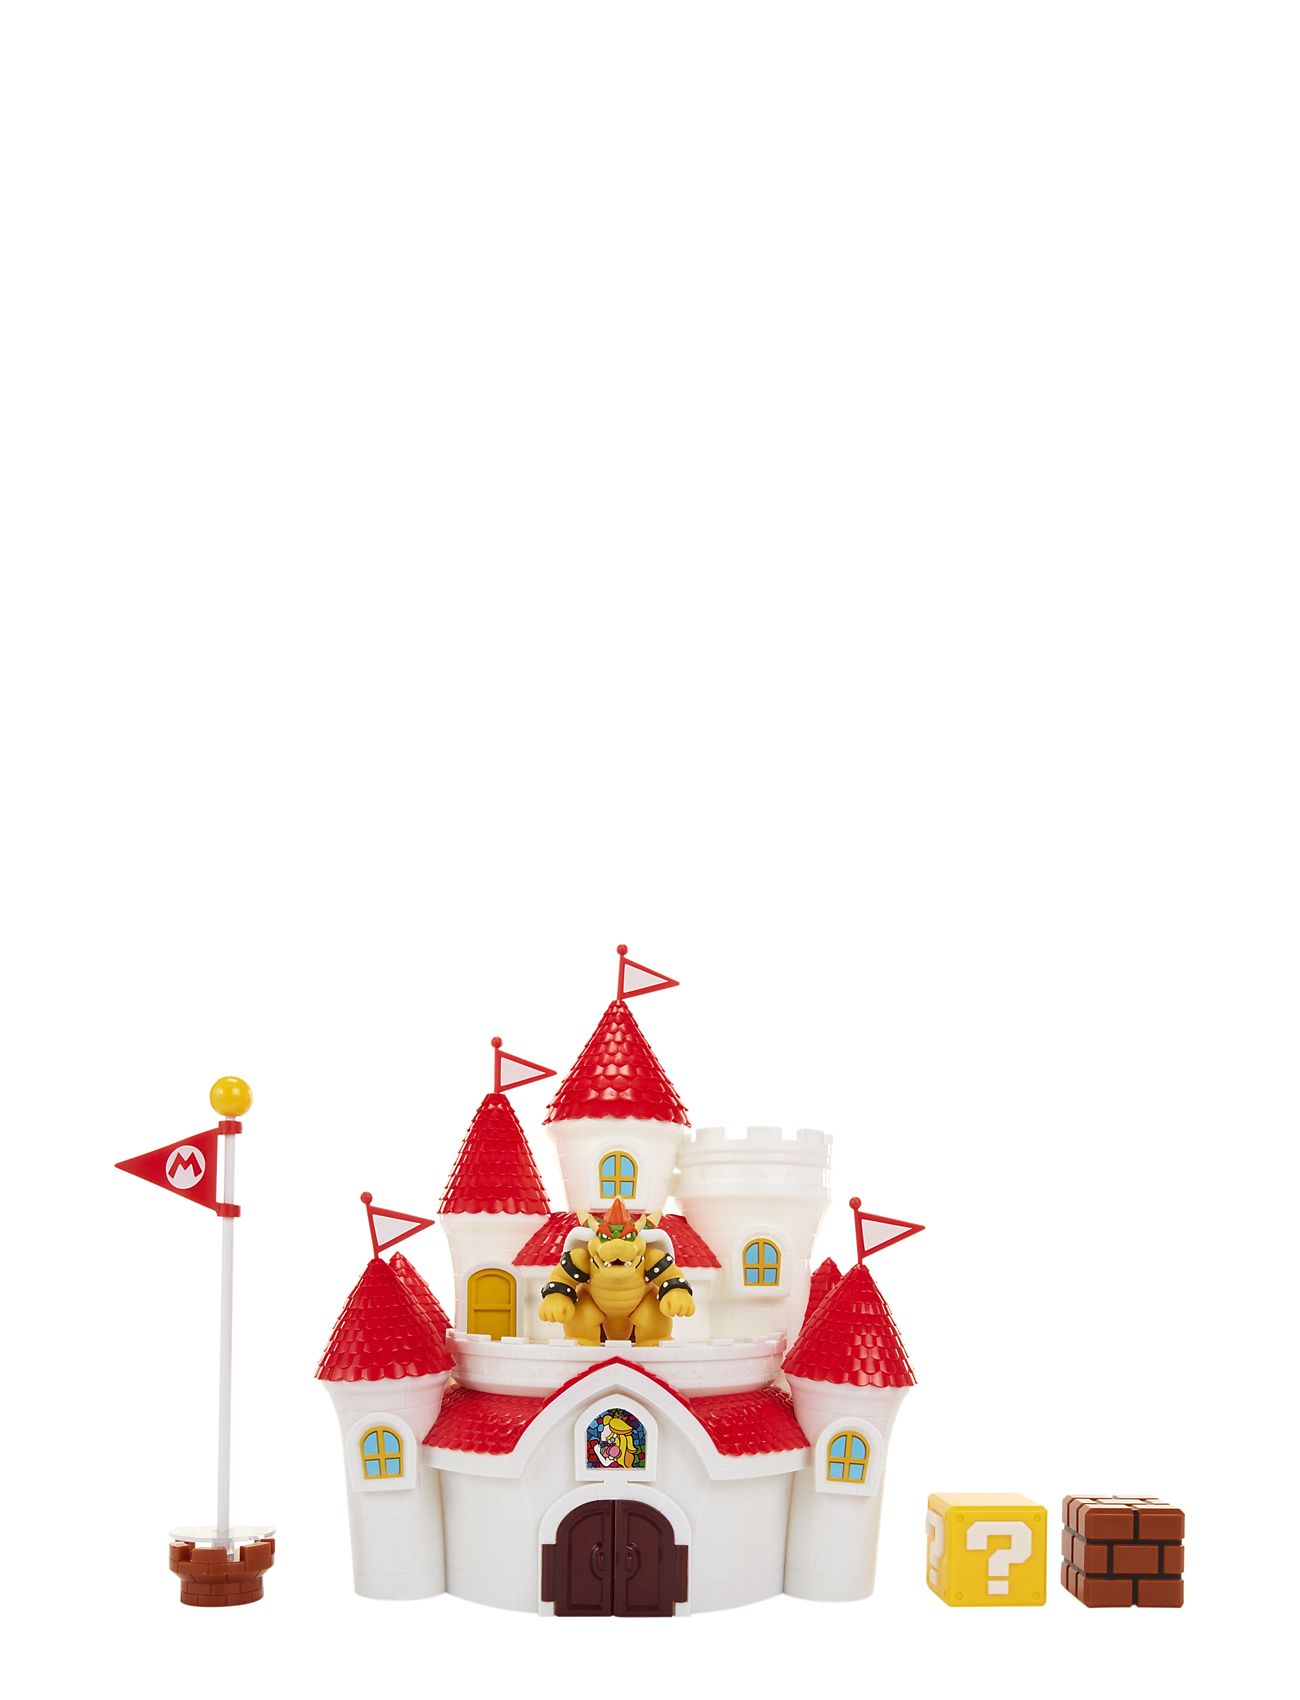 Nintendo Mushroom Kingdom Castle Playset Toys Playsets & Action Figures Play Sets Multi/patterned JAKKS